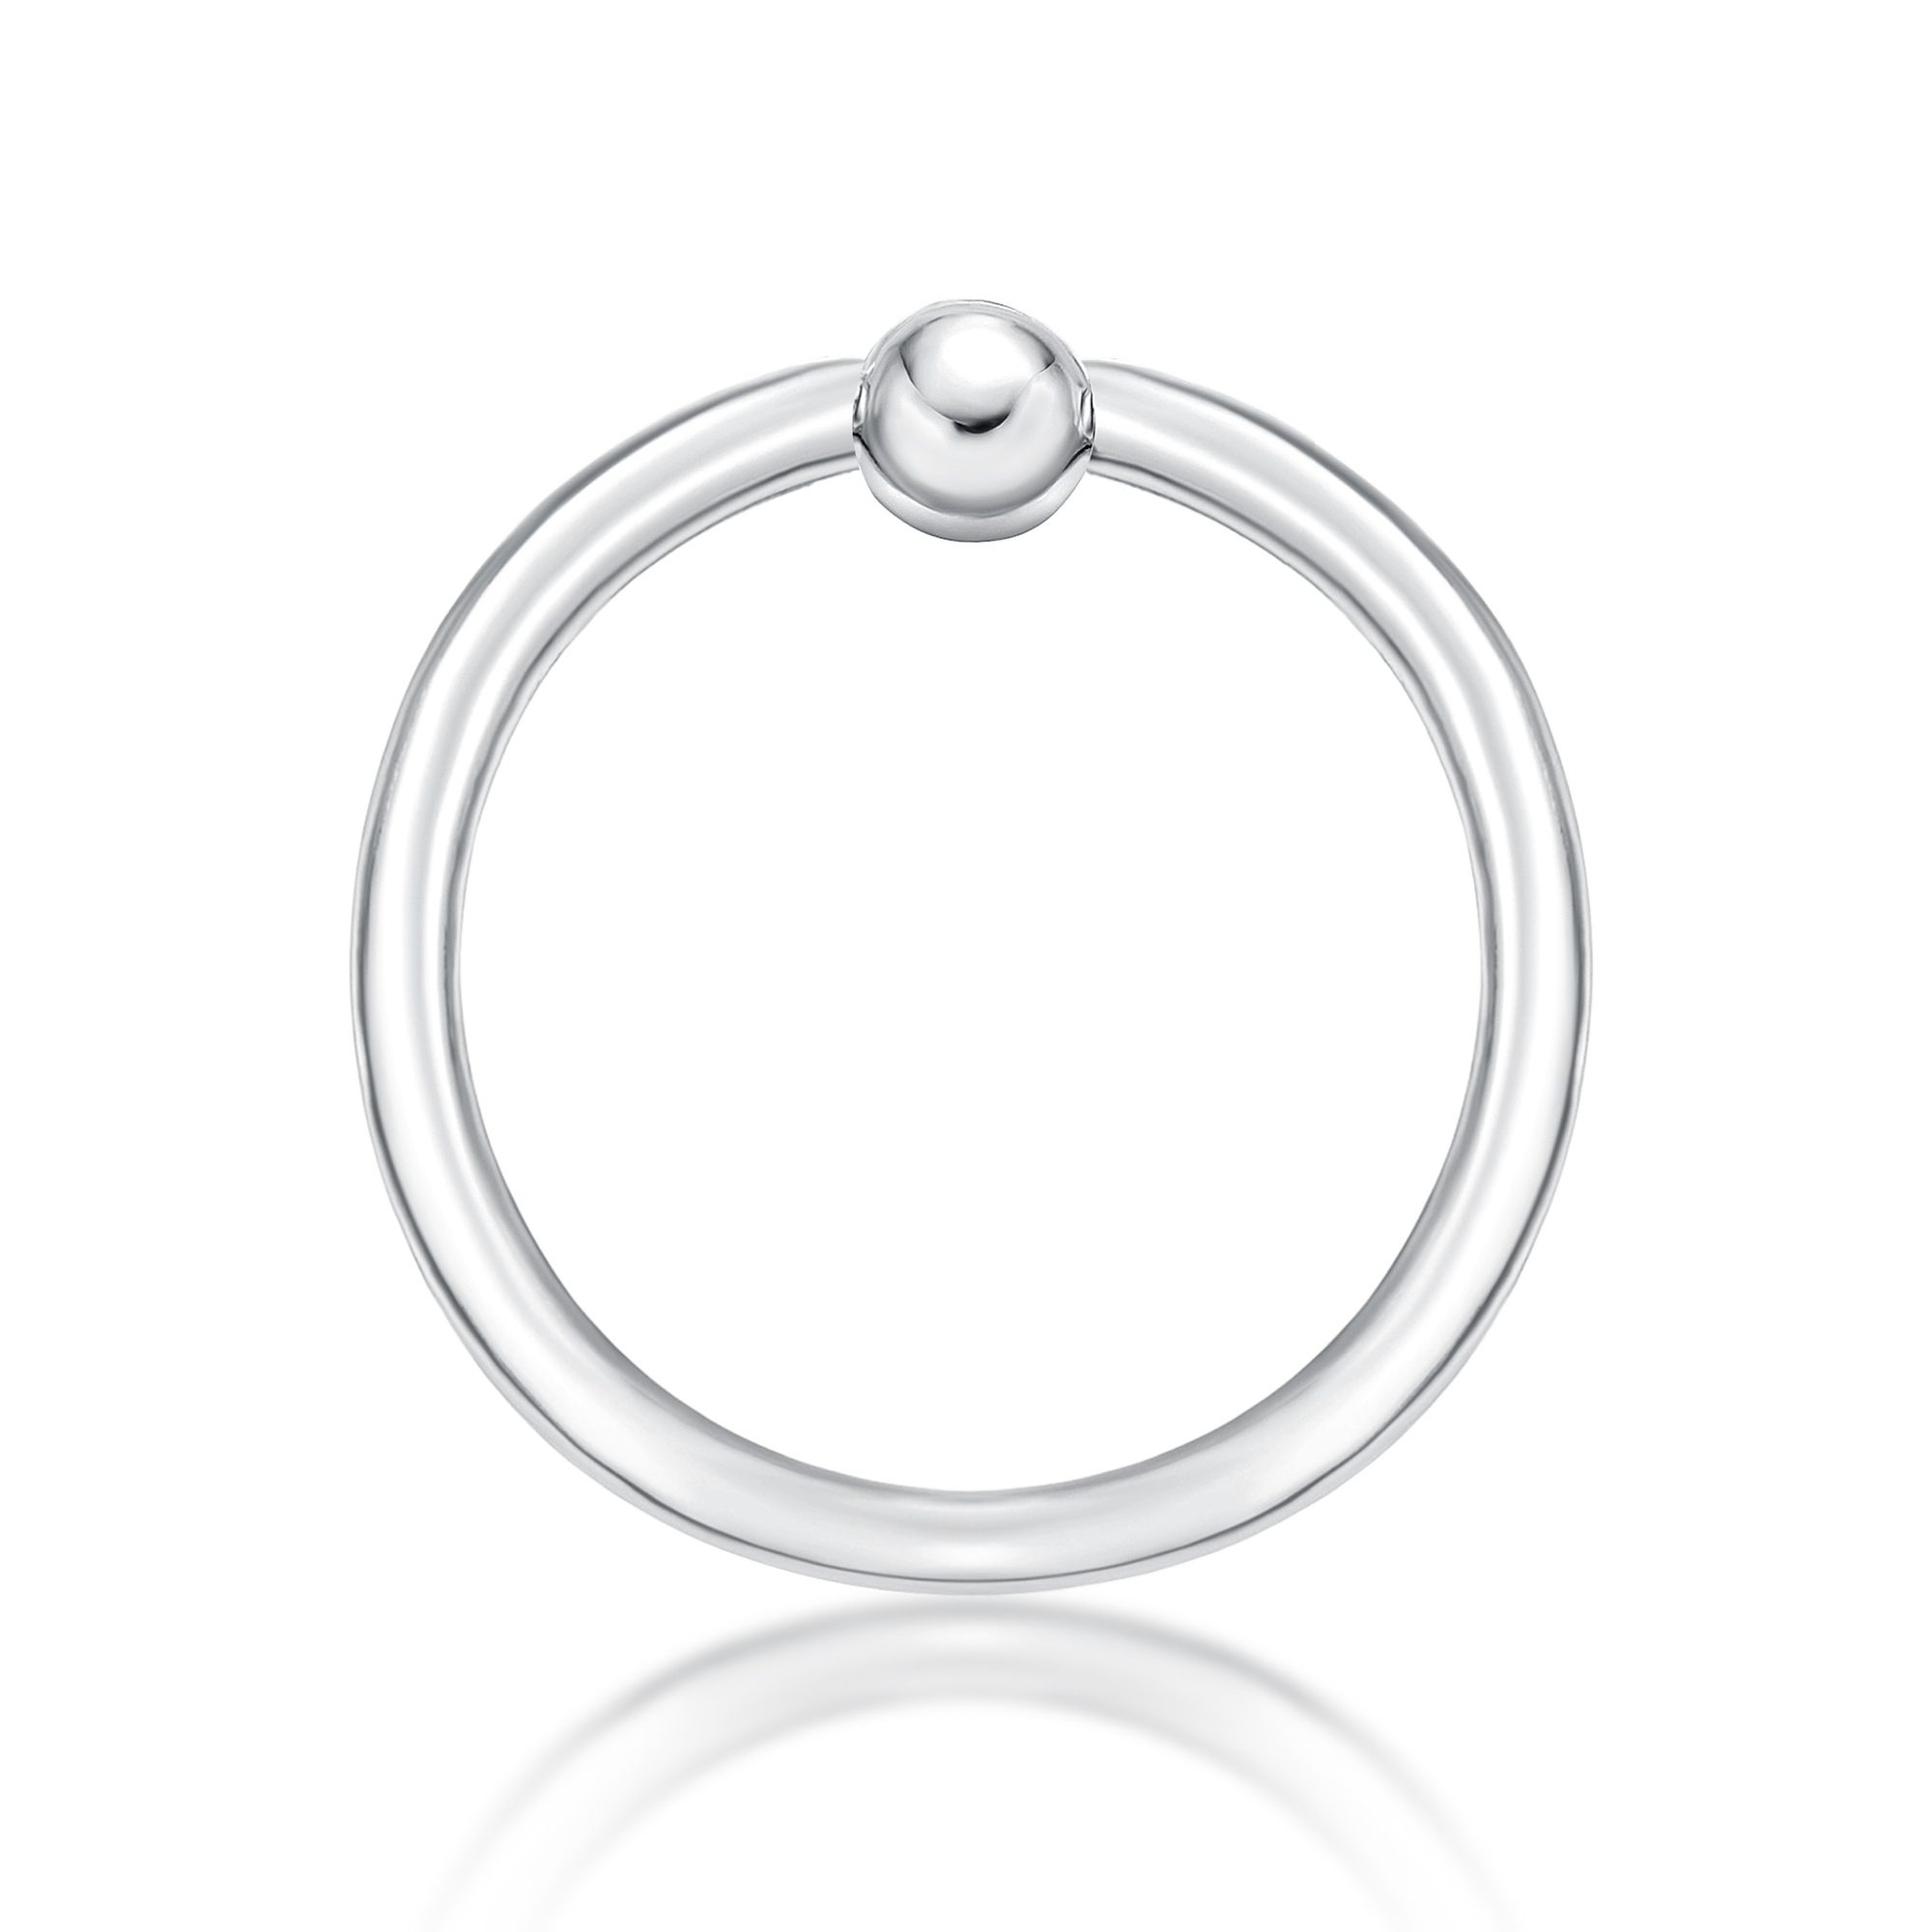 44608-nipple-ring-the-piercer-white-gold-44608.jpg